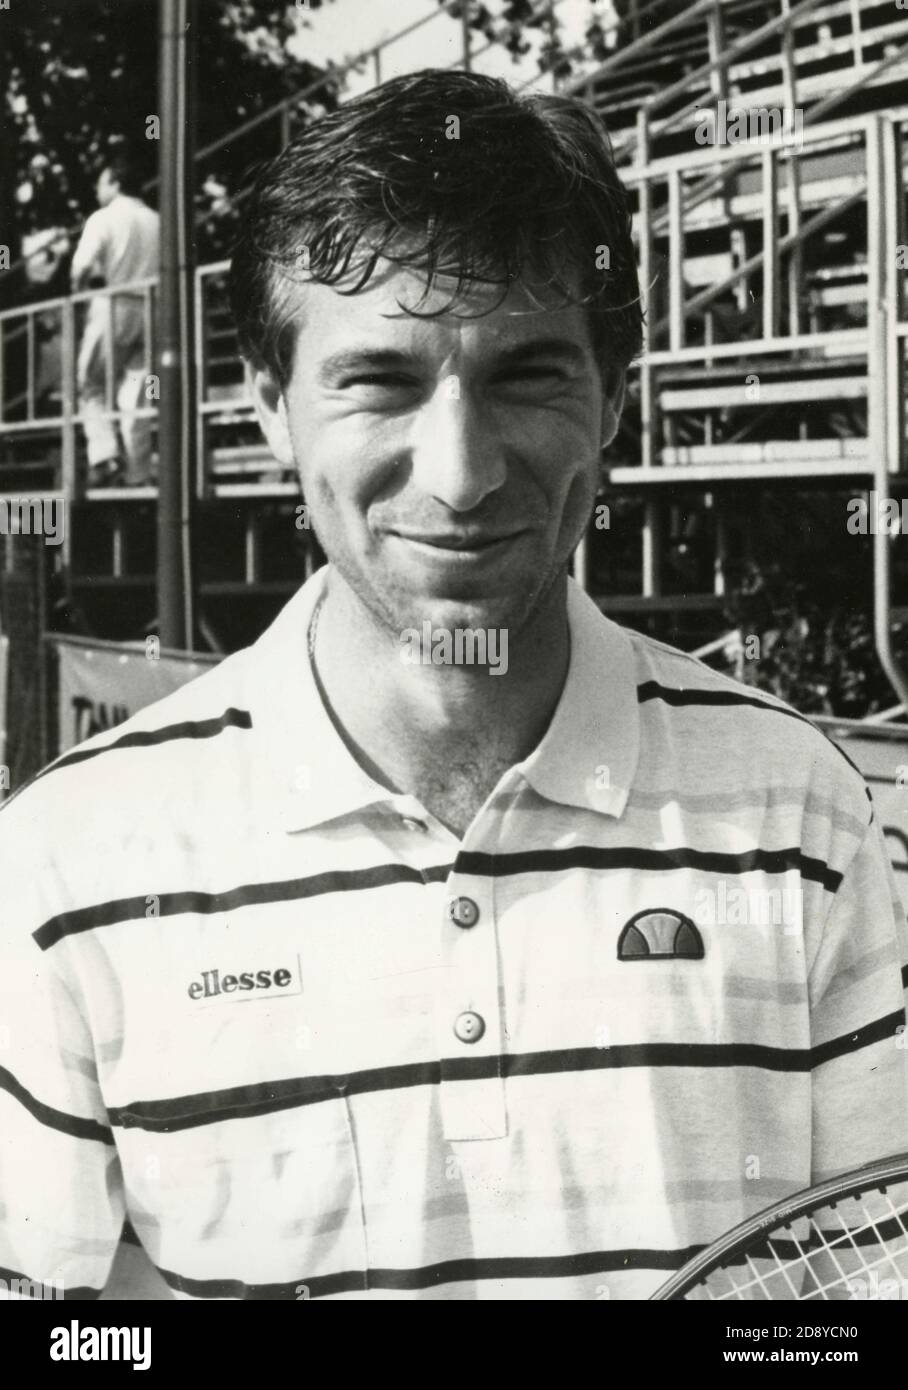 Italian tennis player Massimiliano Narducci, Italy 1980s Stock Photo - Alamy